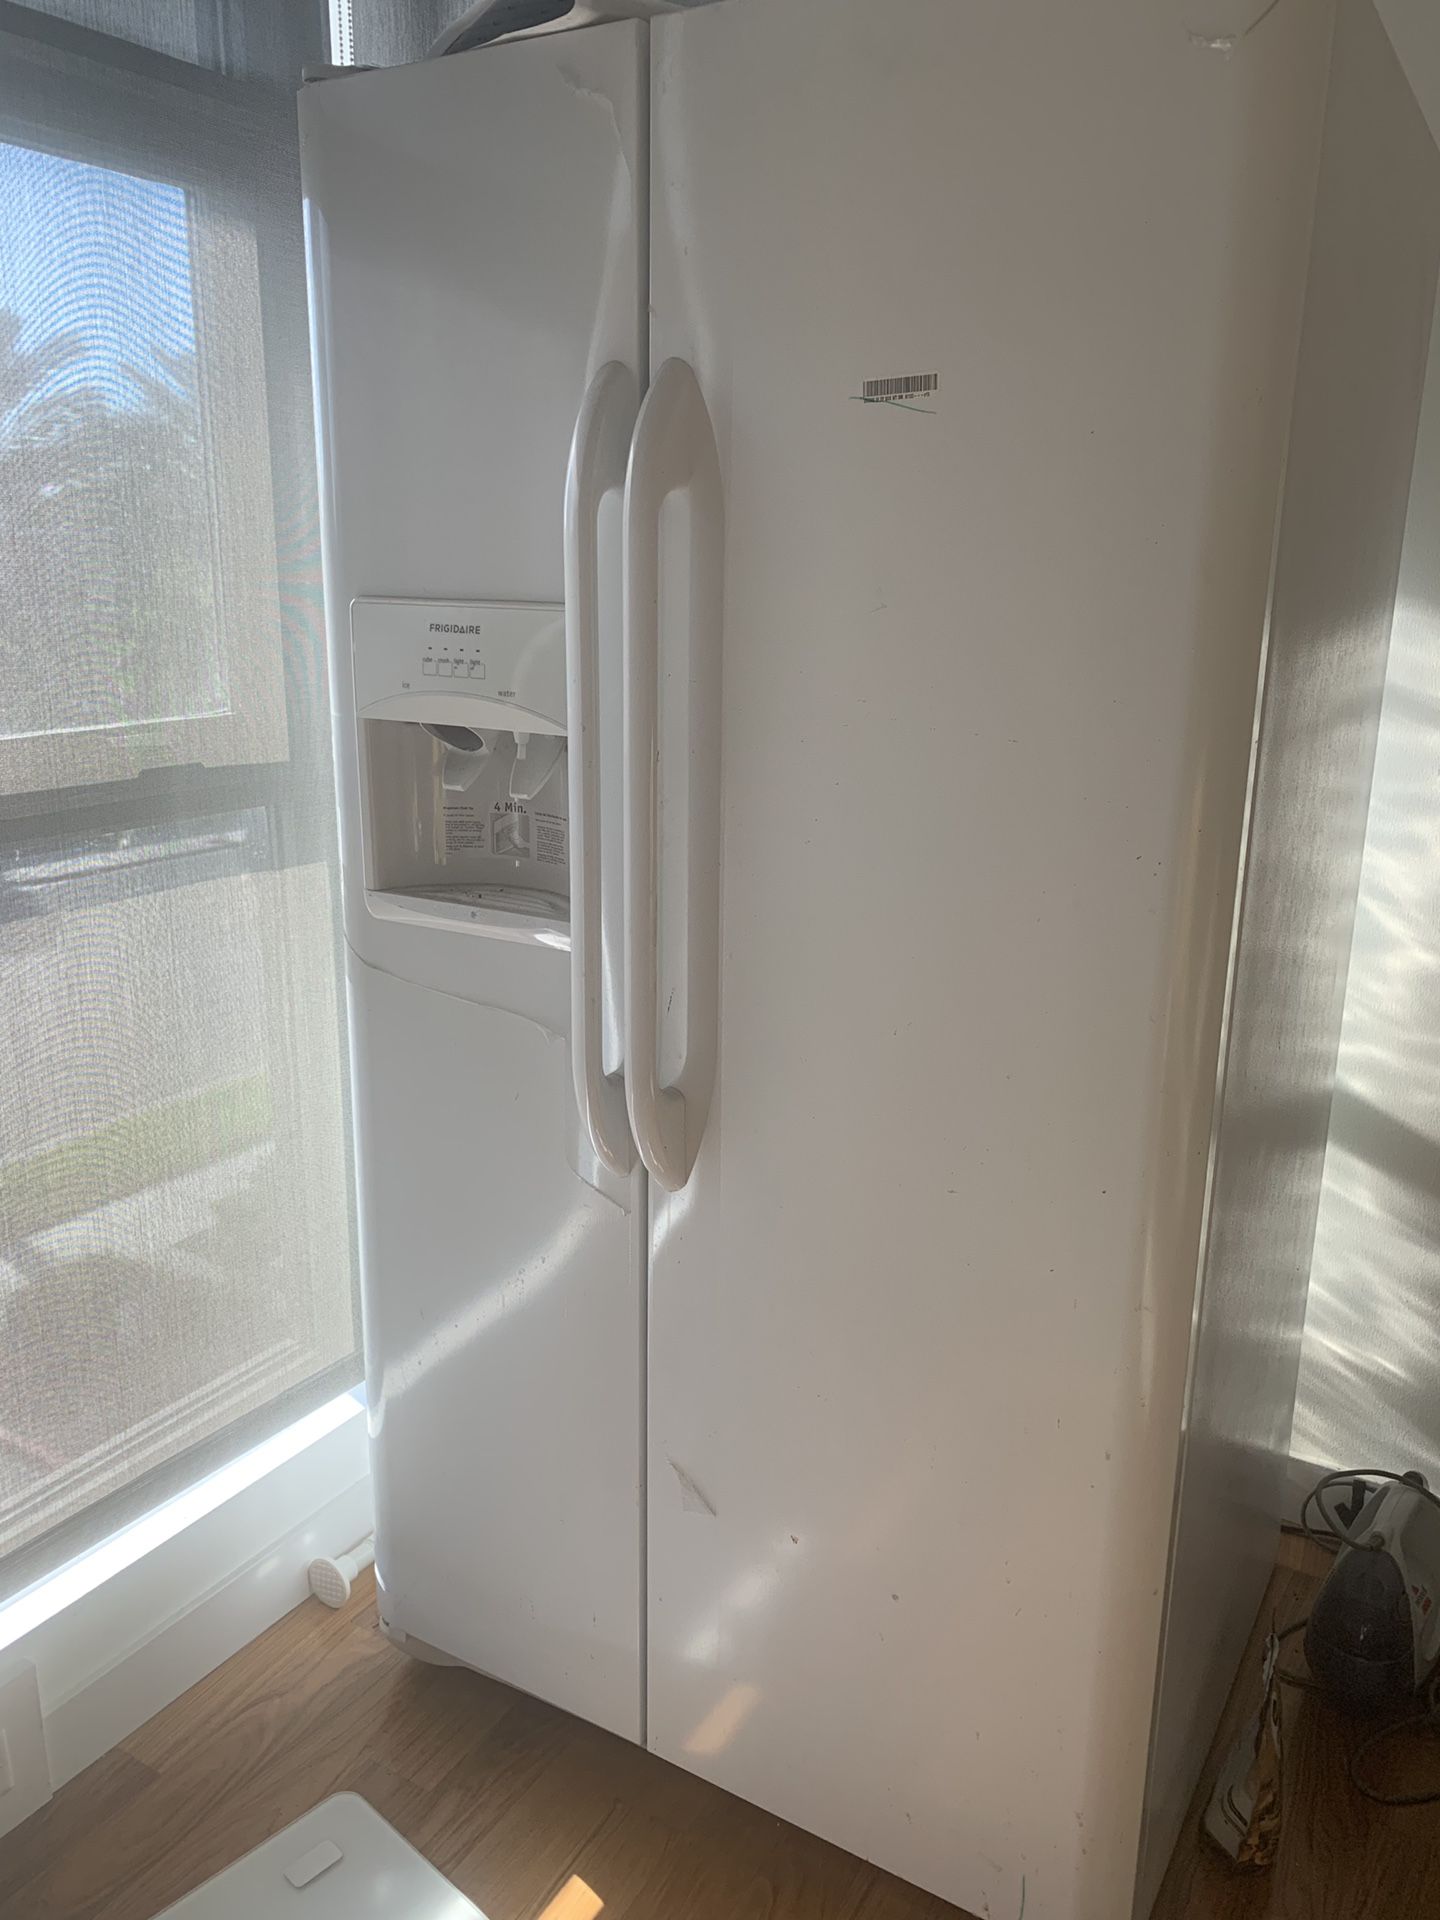 refrigerator，2 doors，big size，water/ice